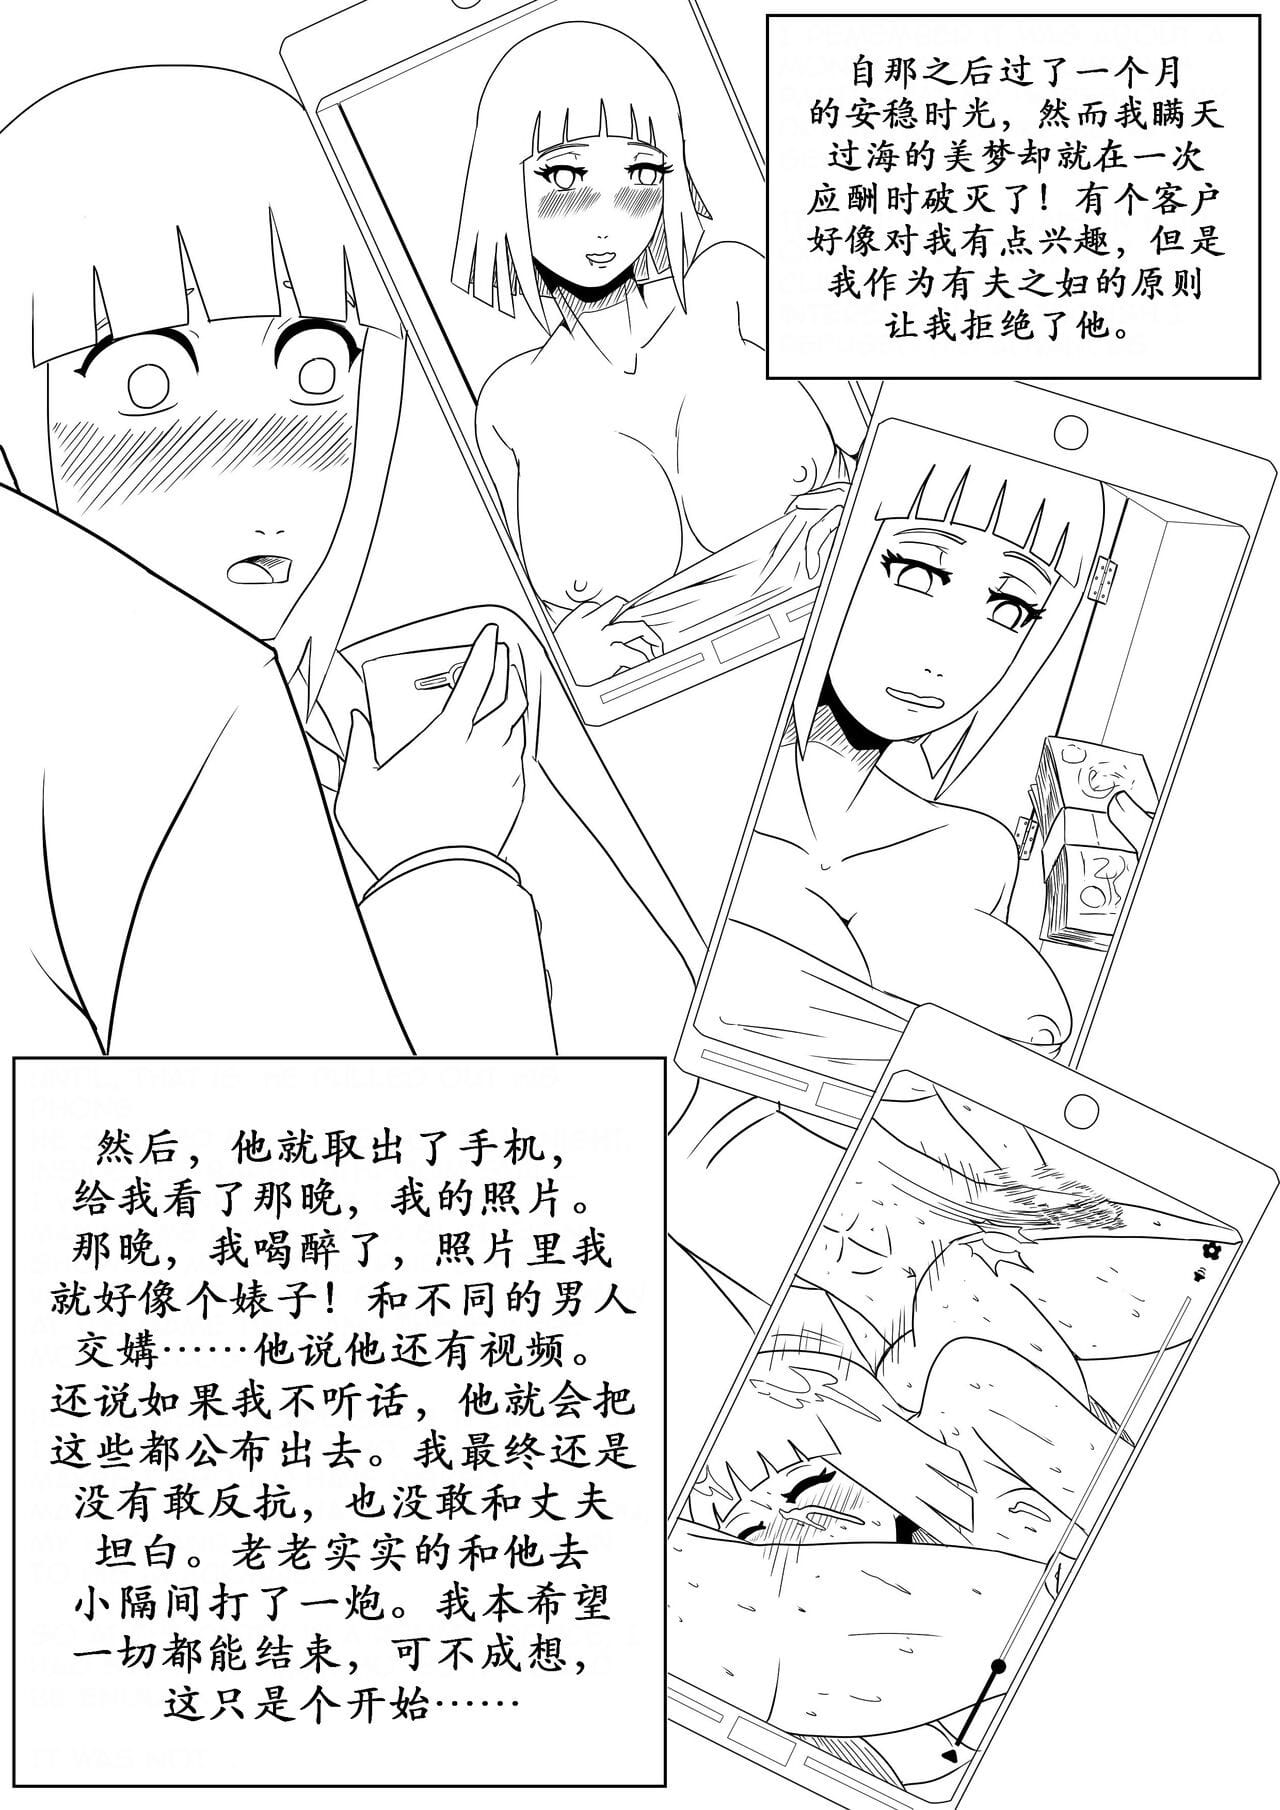 堕雏田（k记翻译） page 1